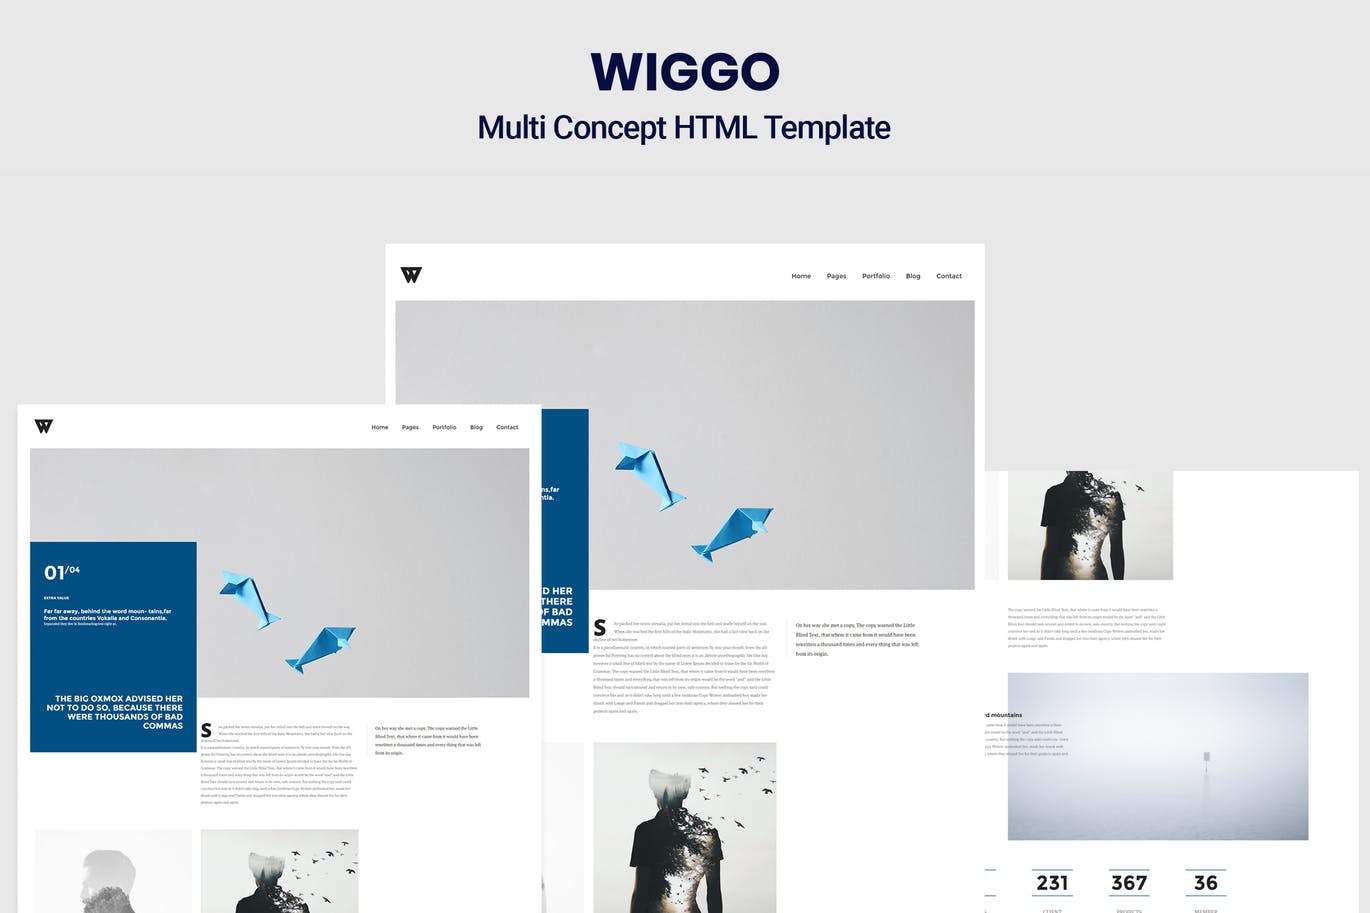 广告代理商/杂志/个人博客网站设计适用的HTML模板第一素材精选 Wiggo – Multi Concept HTML Template插图